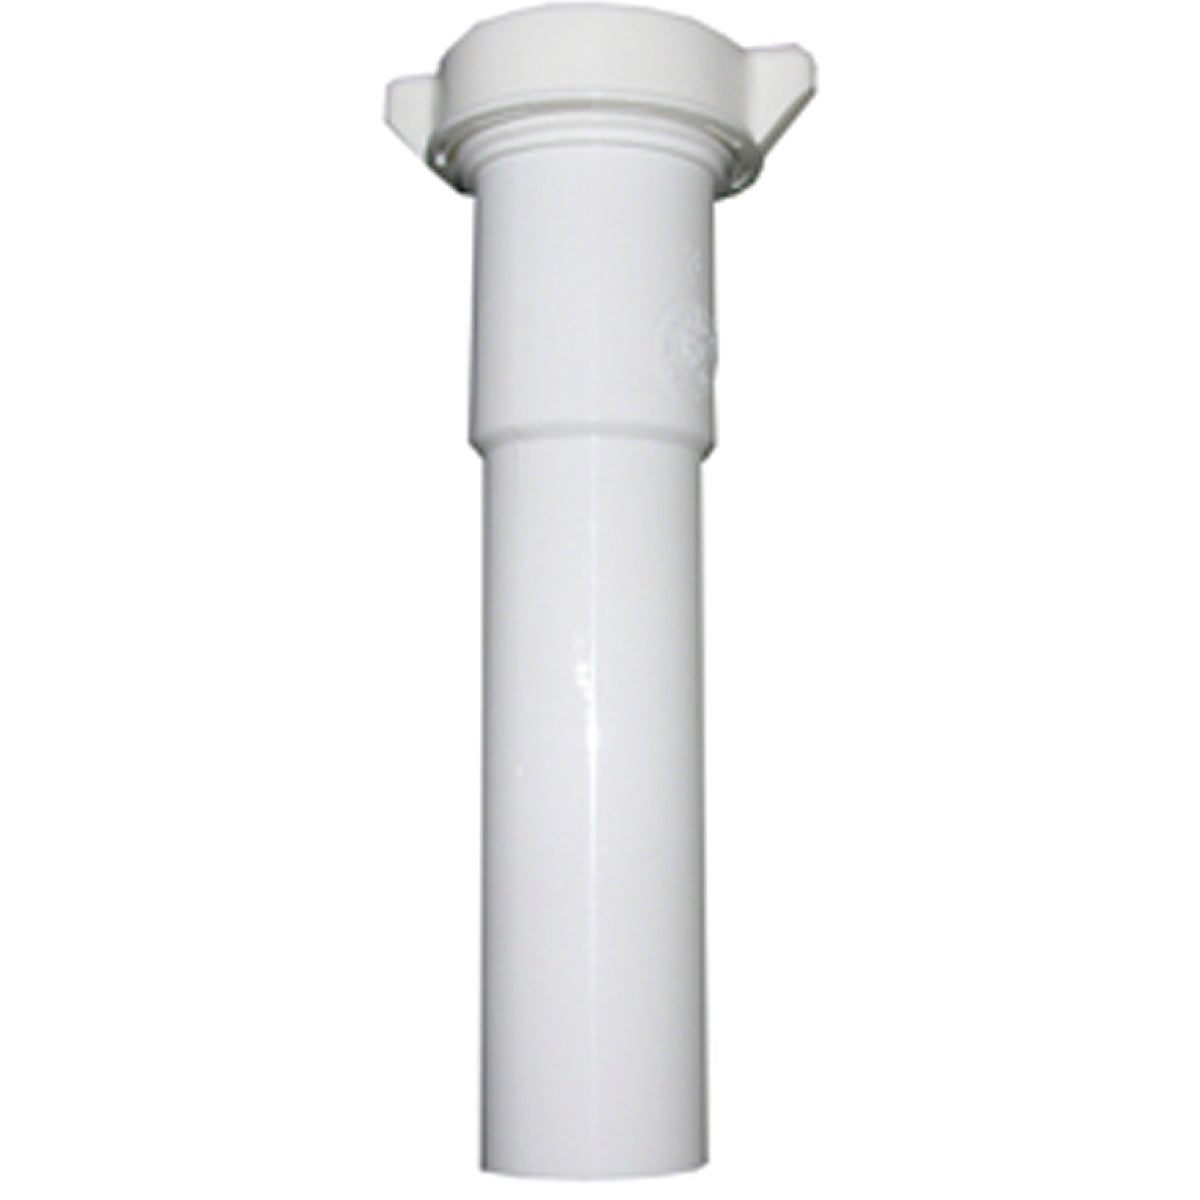 Lasco 1-1/2 In. OD x 12 In. L White Plastic Extension Tube